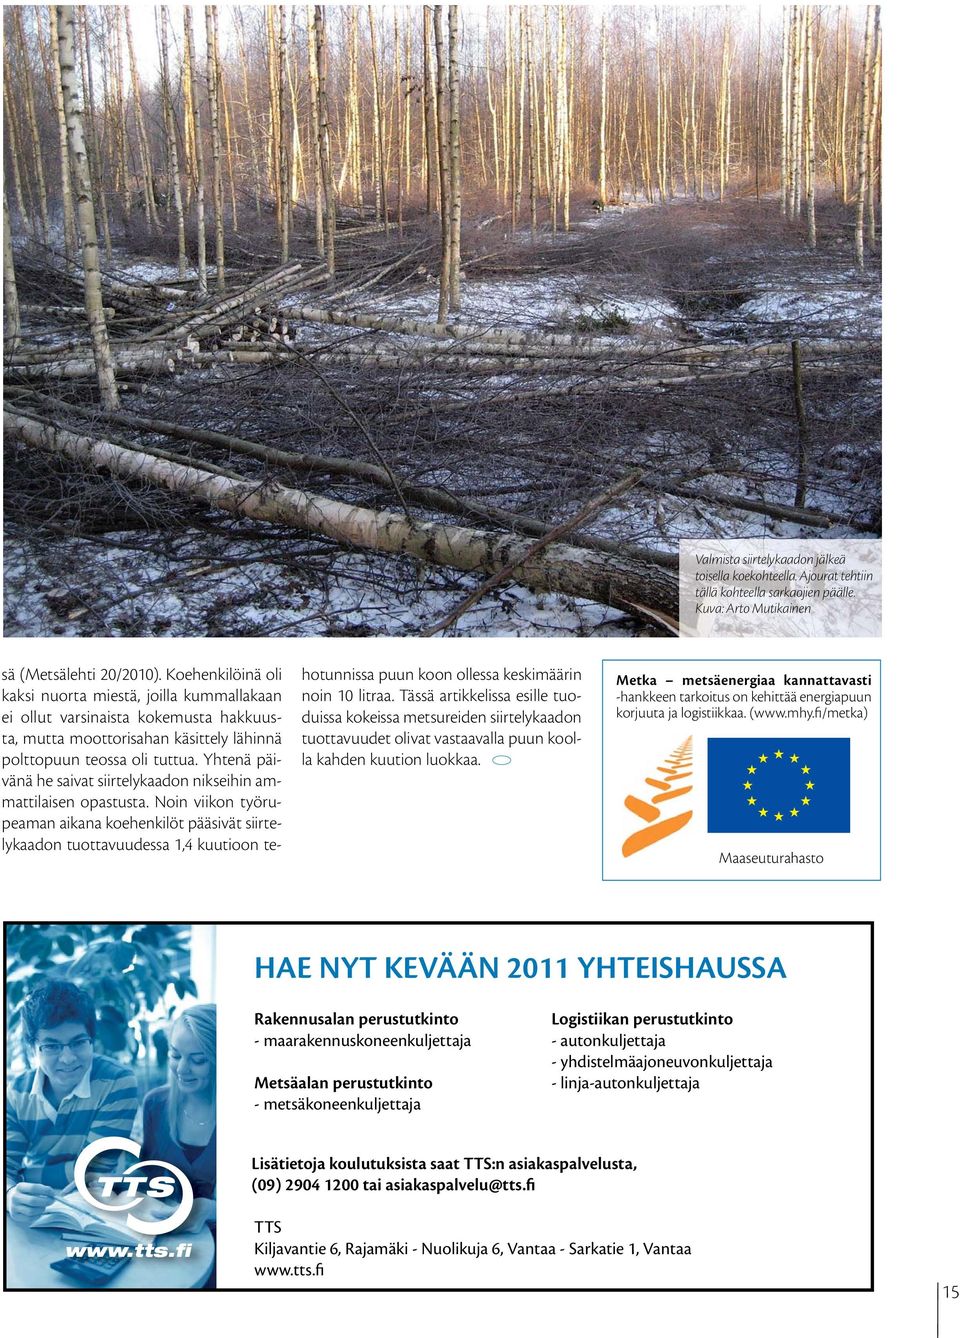 Metka metsäenergiaa kannattavasti -hankkeen tarkoitus on kehittää energiapuun korjuuta ja logistiikkaa. (www.mhy.